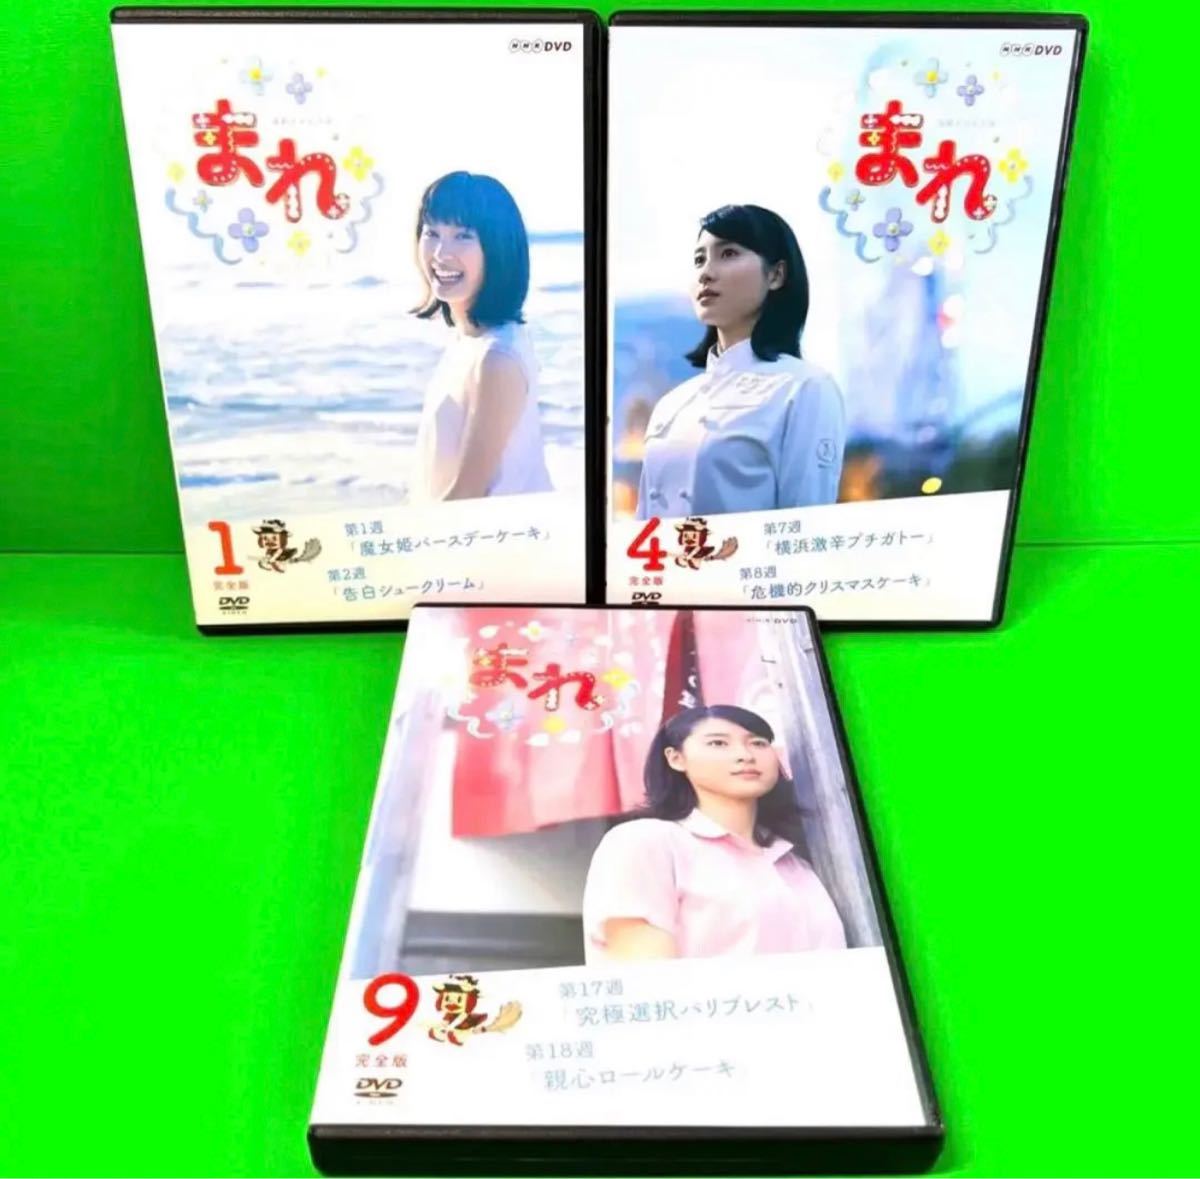 連続テレビ小説 朝ドラ まれ 完全版 DVDBOX DVD 1 2 3 DVD-BOX 完全版 